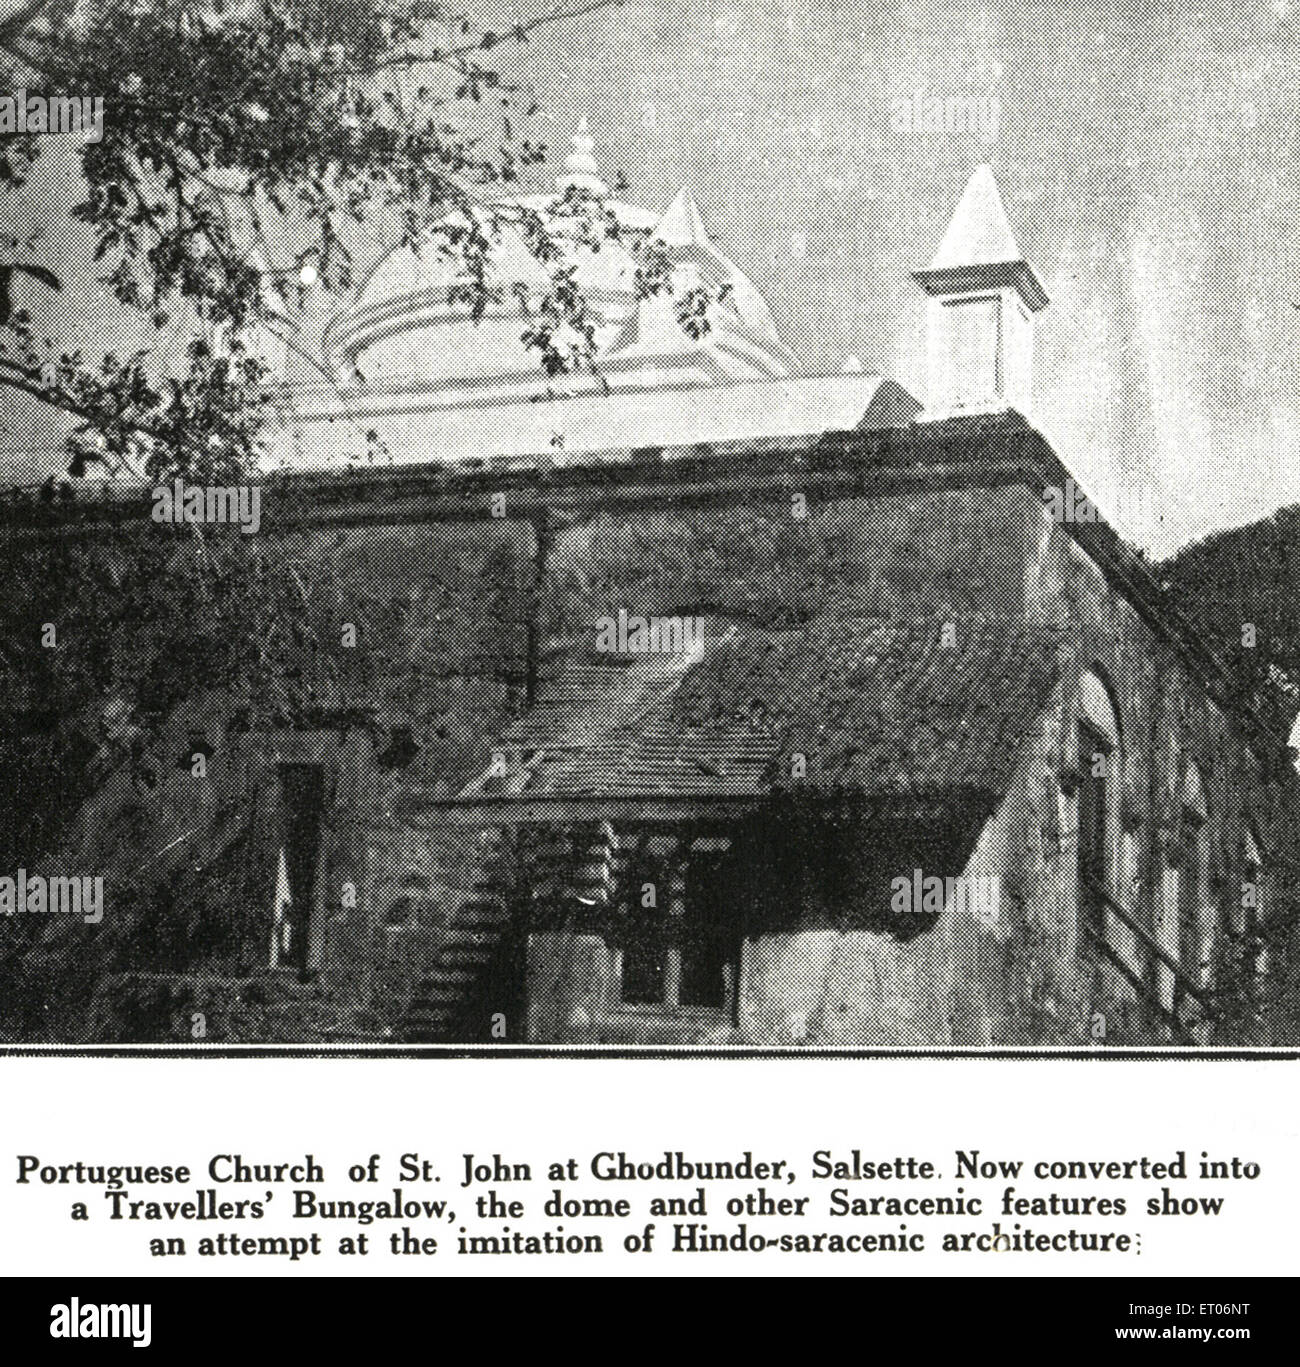 L'église portugaise de Saint Jean Ghodbunder Salsette converti traveller's dome bungalow hindou imitation de l'architecture mauresques Banque D'Images